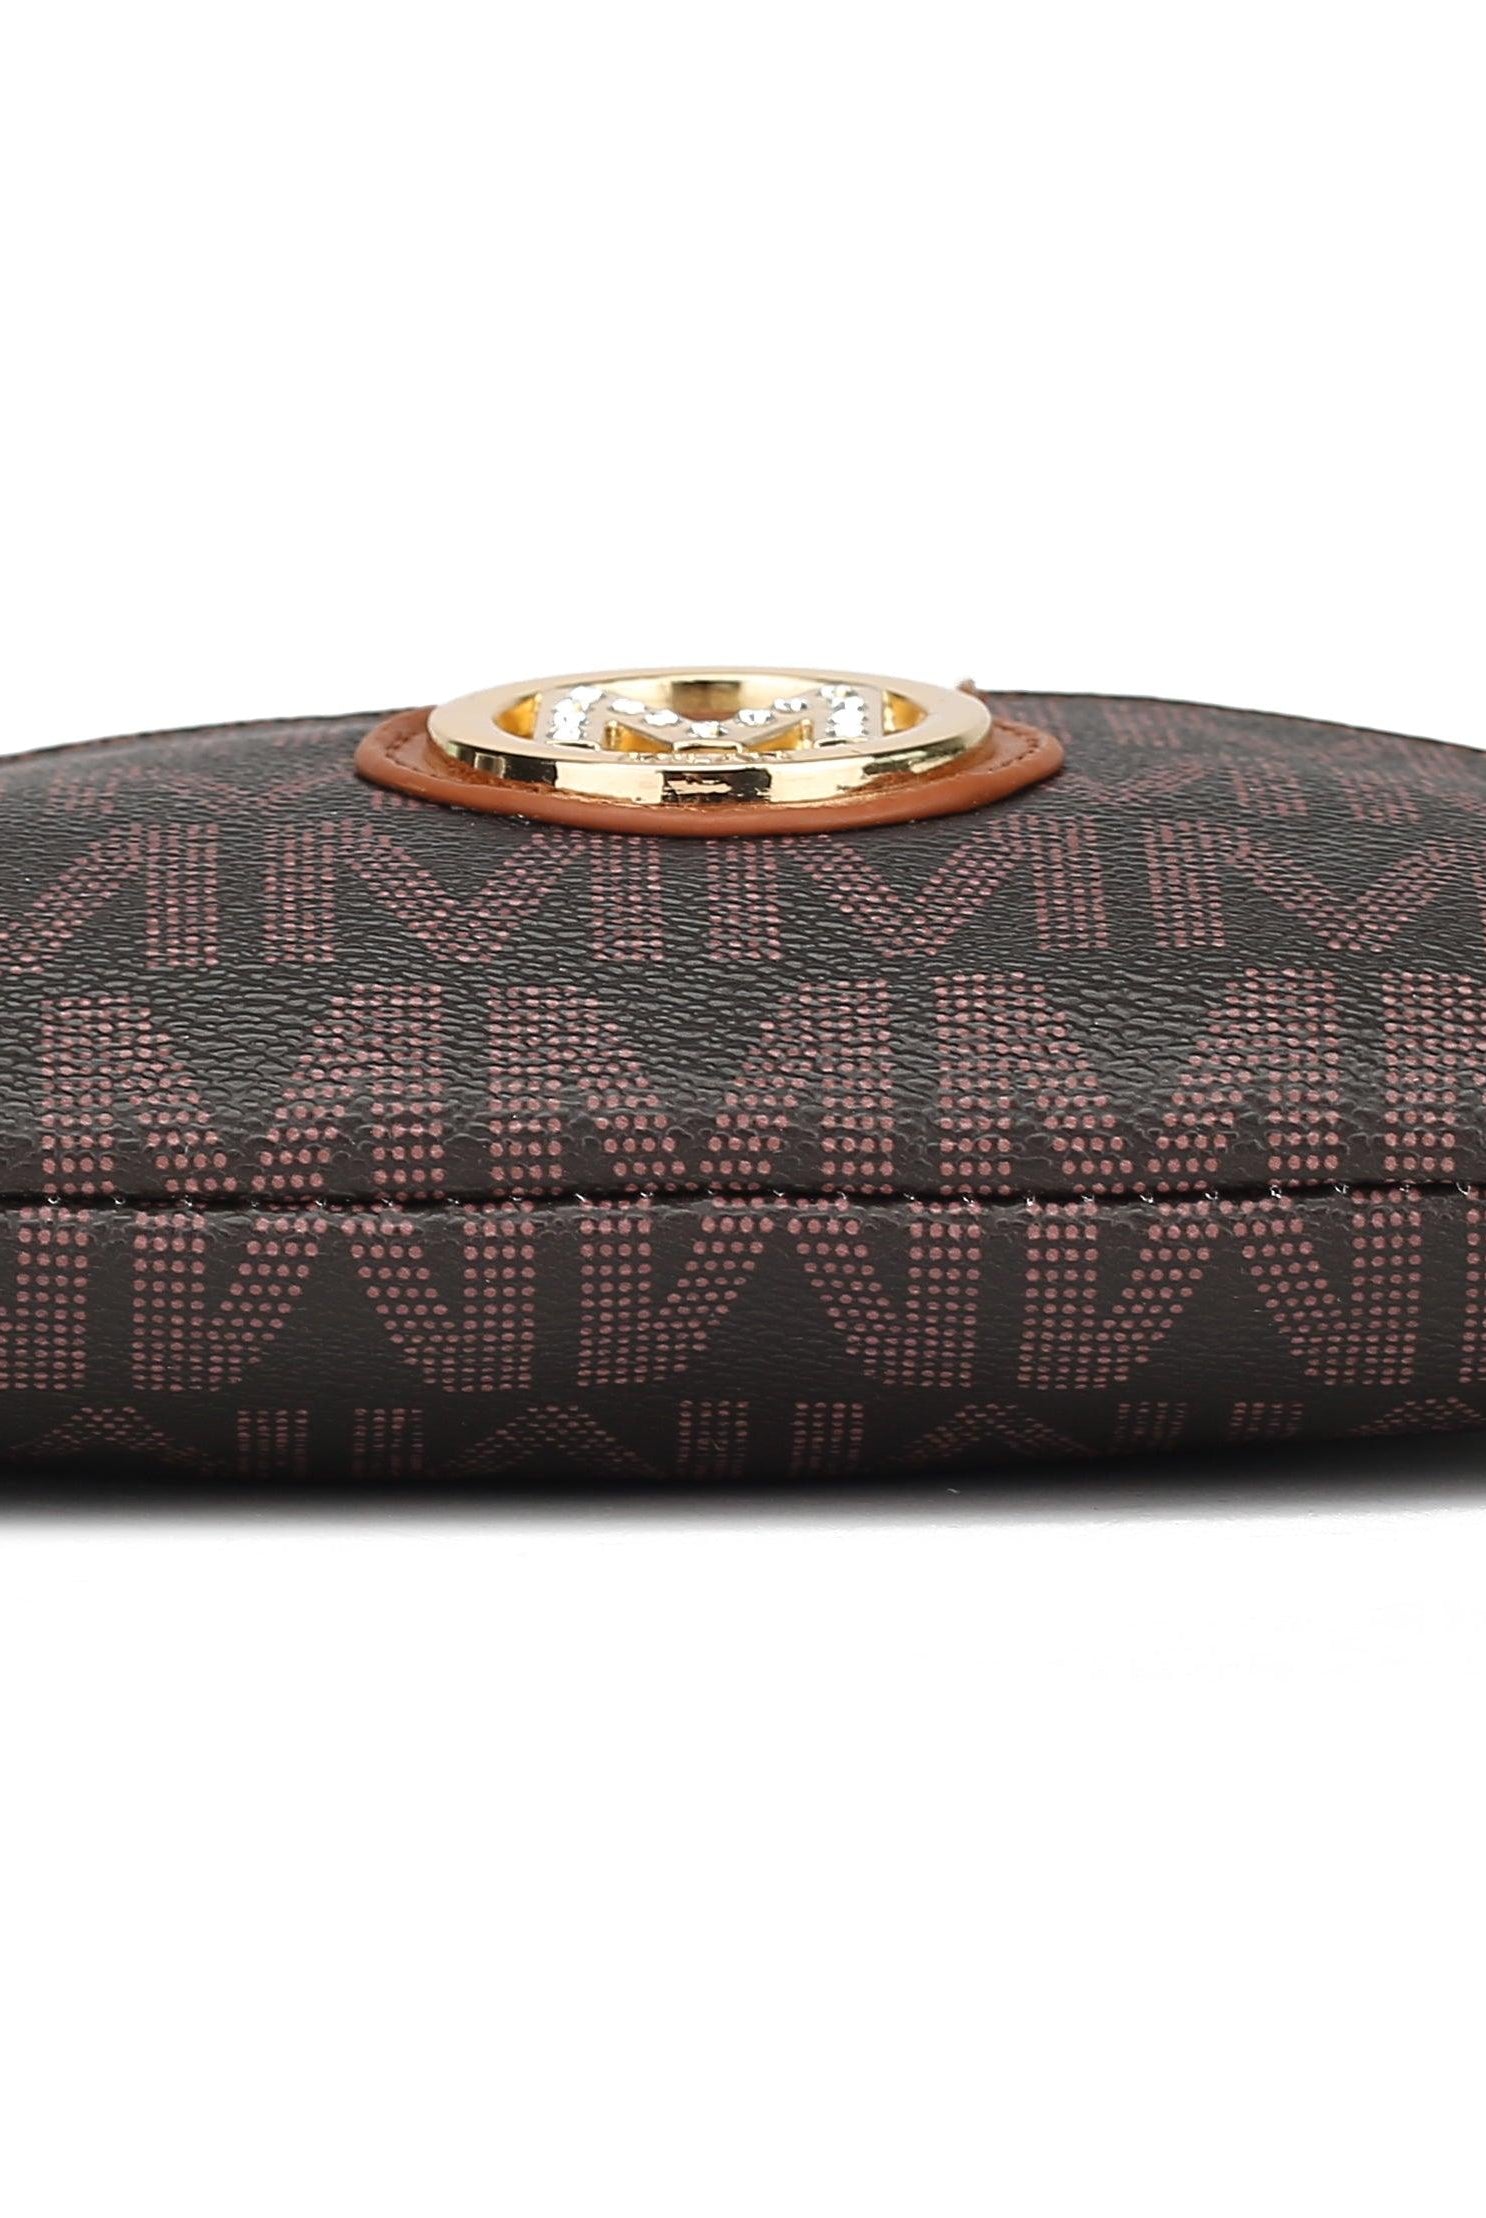 Wallets, Handbags & Accessories Geneve M Signature Crossbody Bag